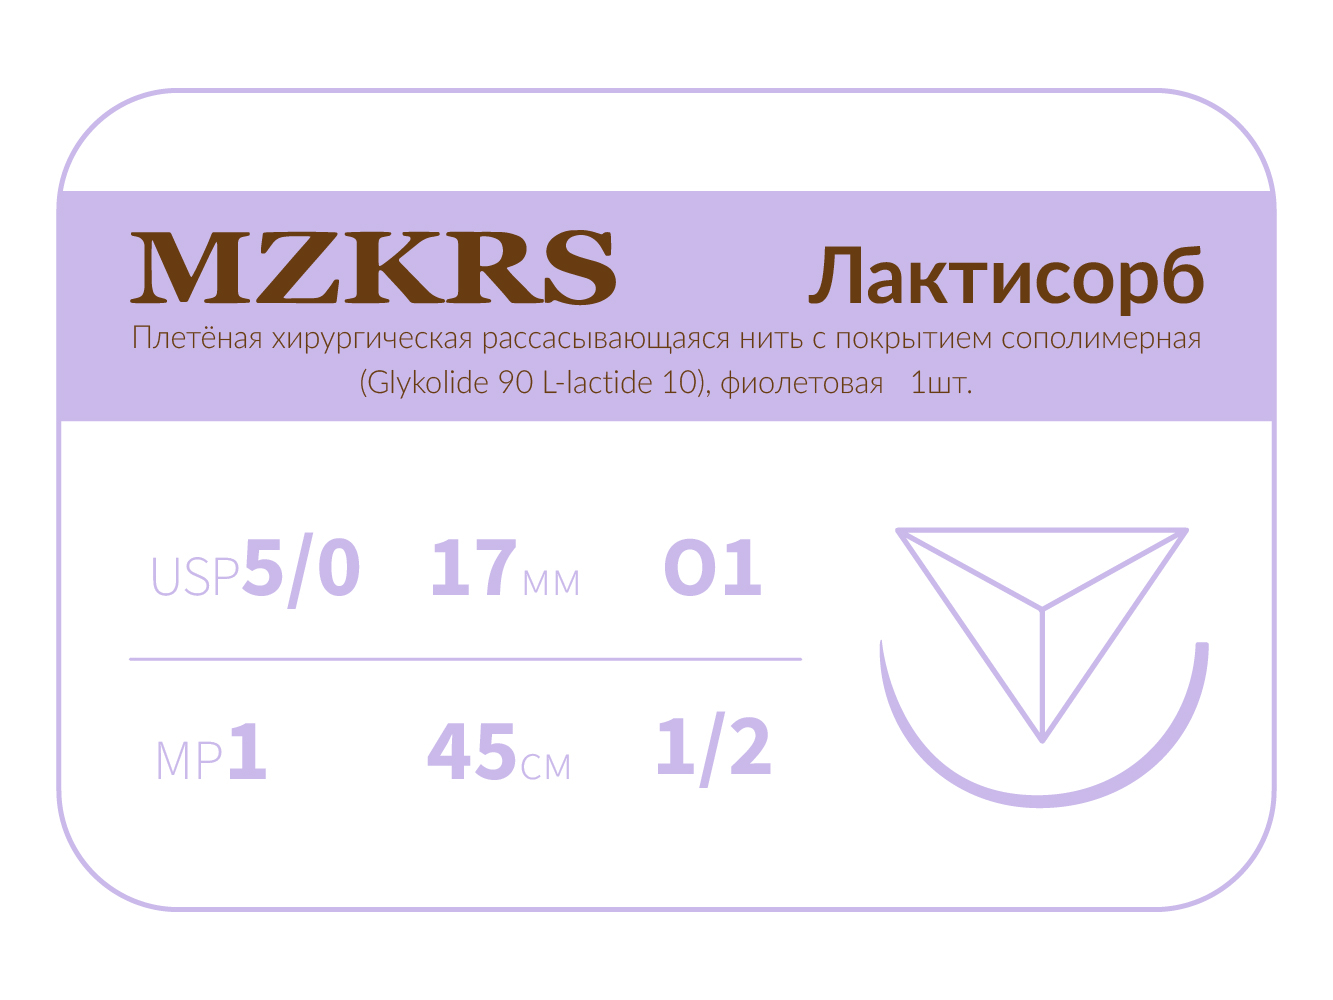 1712О1 Premium-5/0 (1)45 ПГЛ ЛАКТИСОРБ хирургическая нить сополимерная, обратно-режущая игла, MZKRS (Россия)